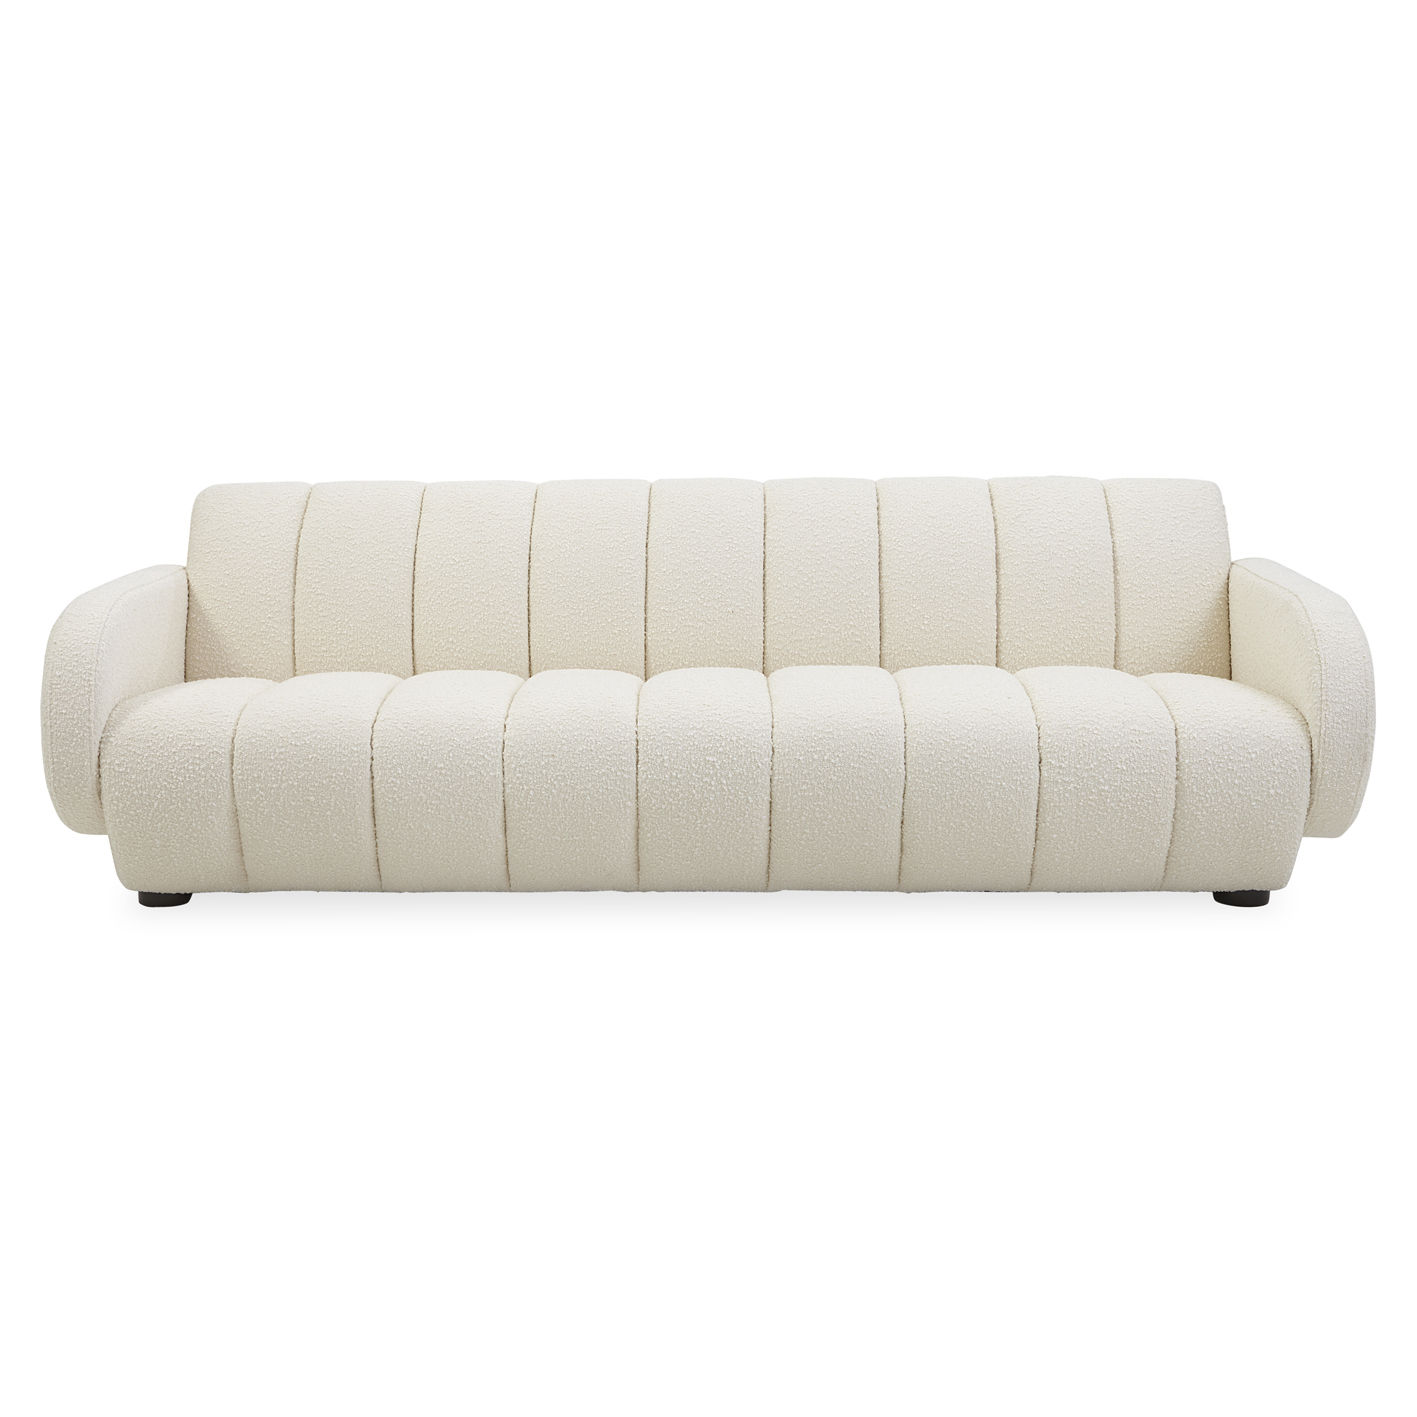 Canapé blanc et fauteuil blanc : 30 modèles canon - Joli Place